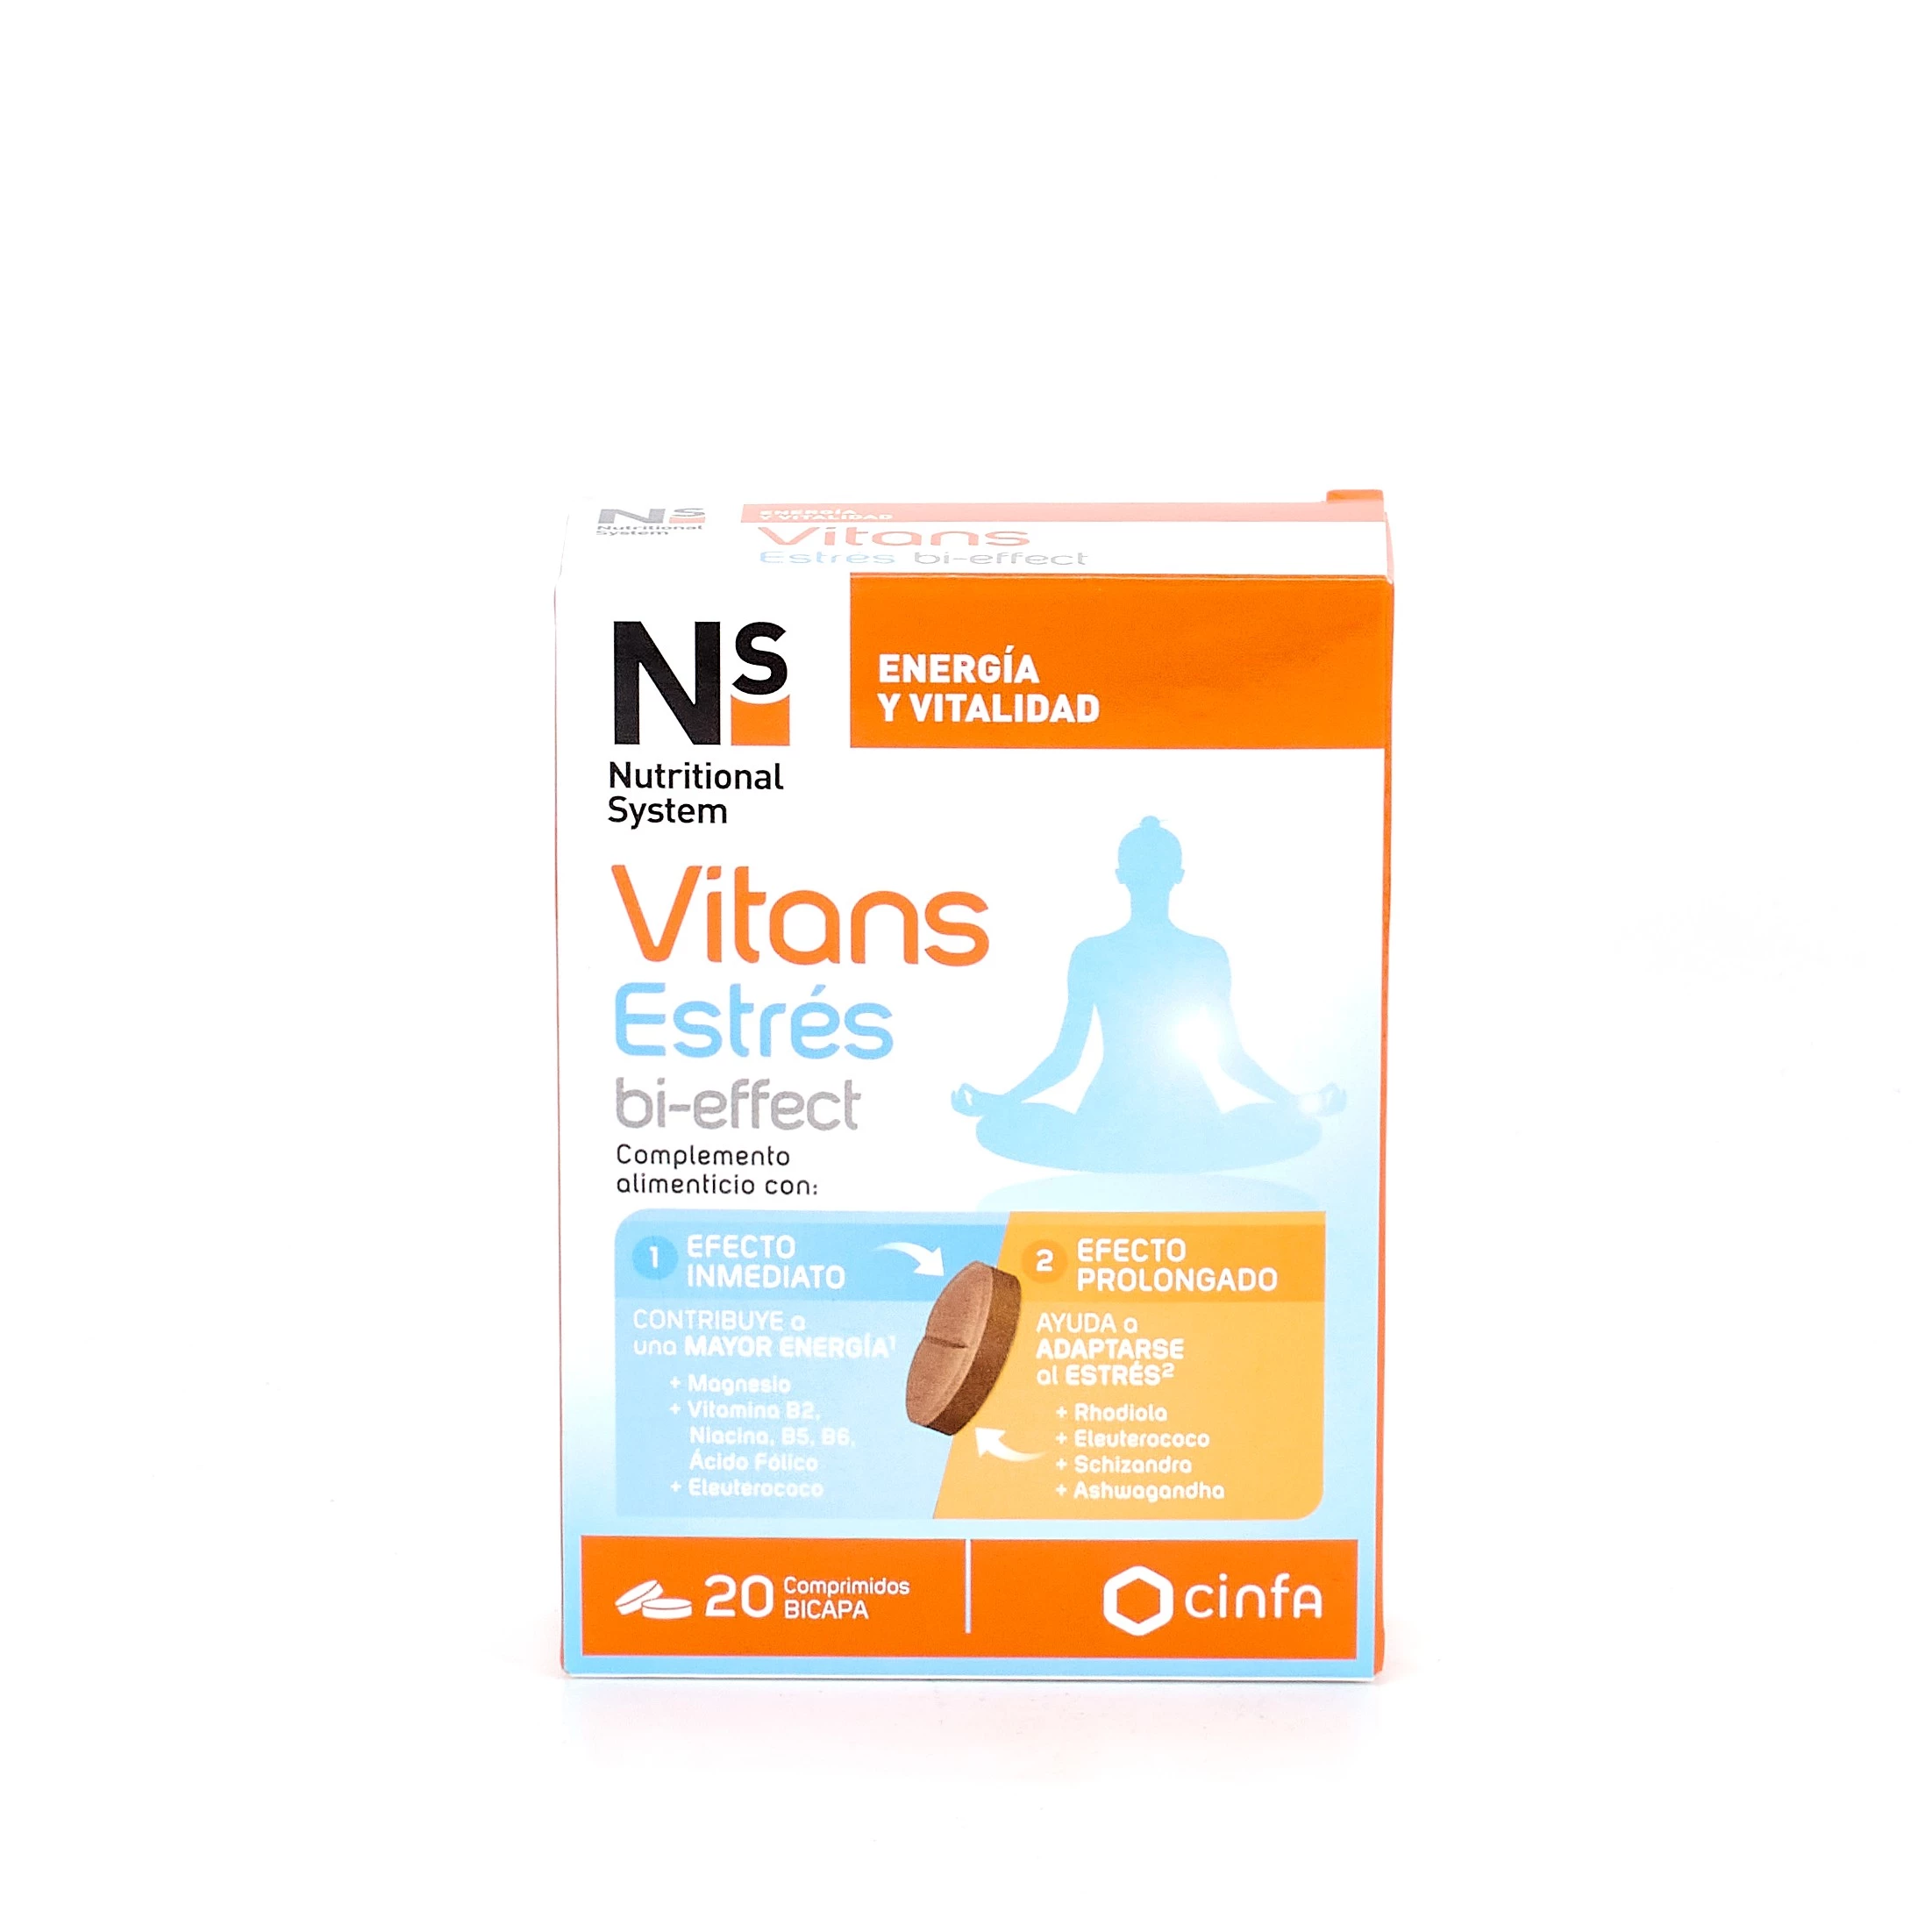 NS Vitans estrés bi-effect, 20 comprimidos